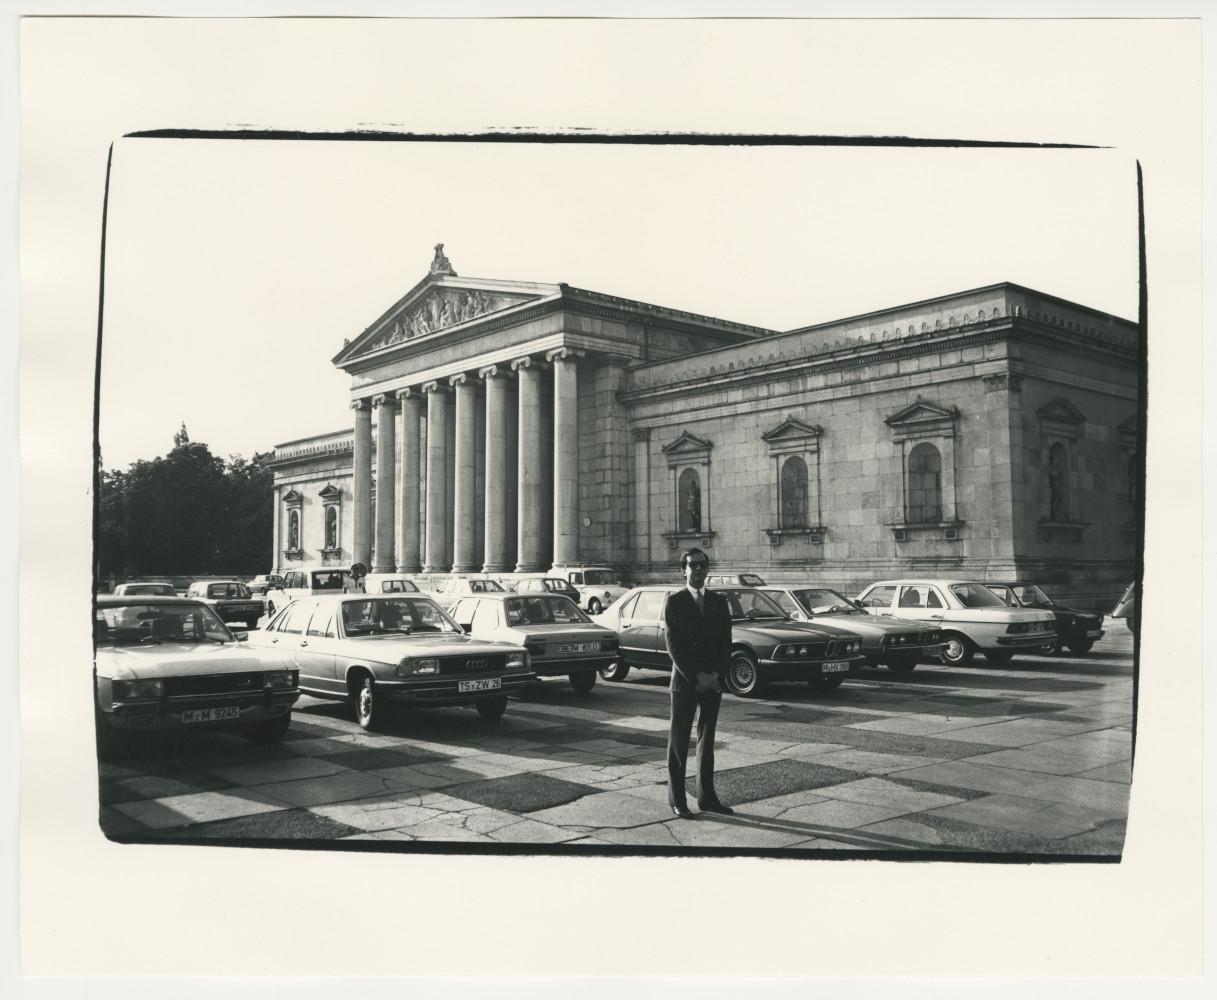 Andy Warhol Black and White Photograph - Munich Glyptothek